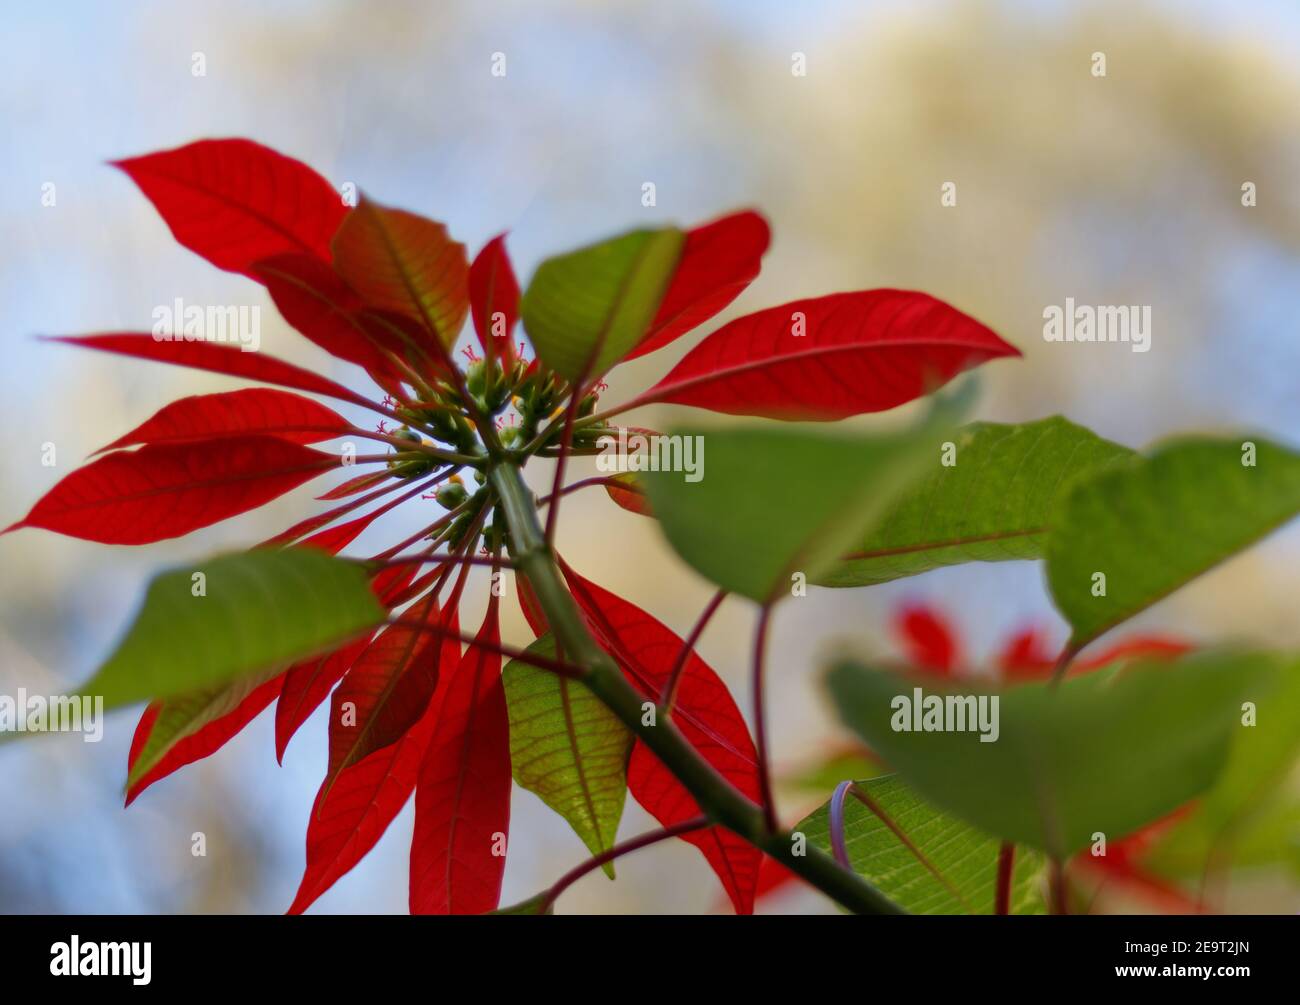 Flor grande de pétalos rojos con fondo verde bokeh, tiro desde abajo (enfoque selectivo) Foto de stock